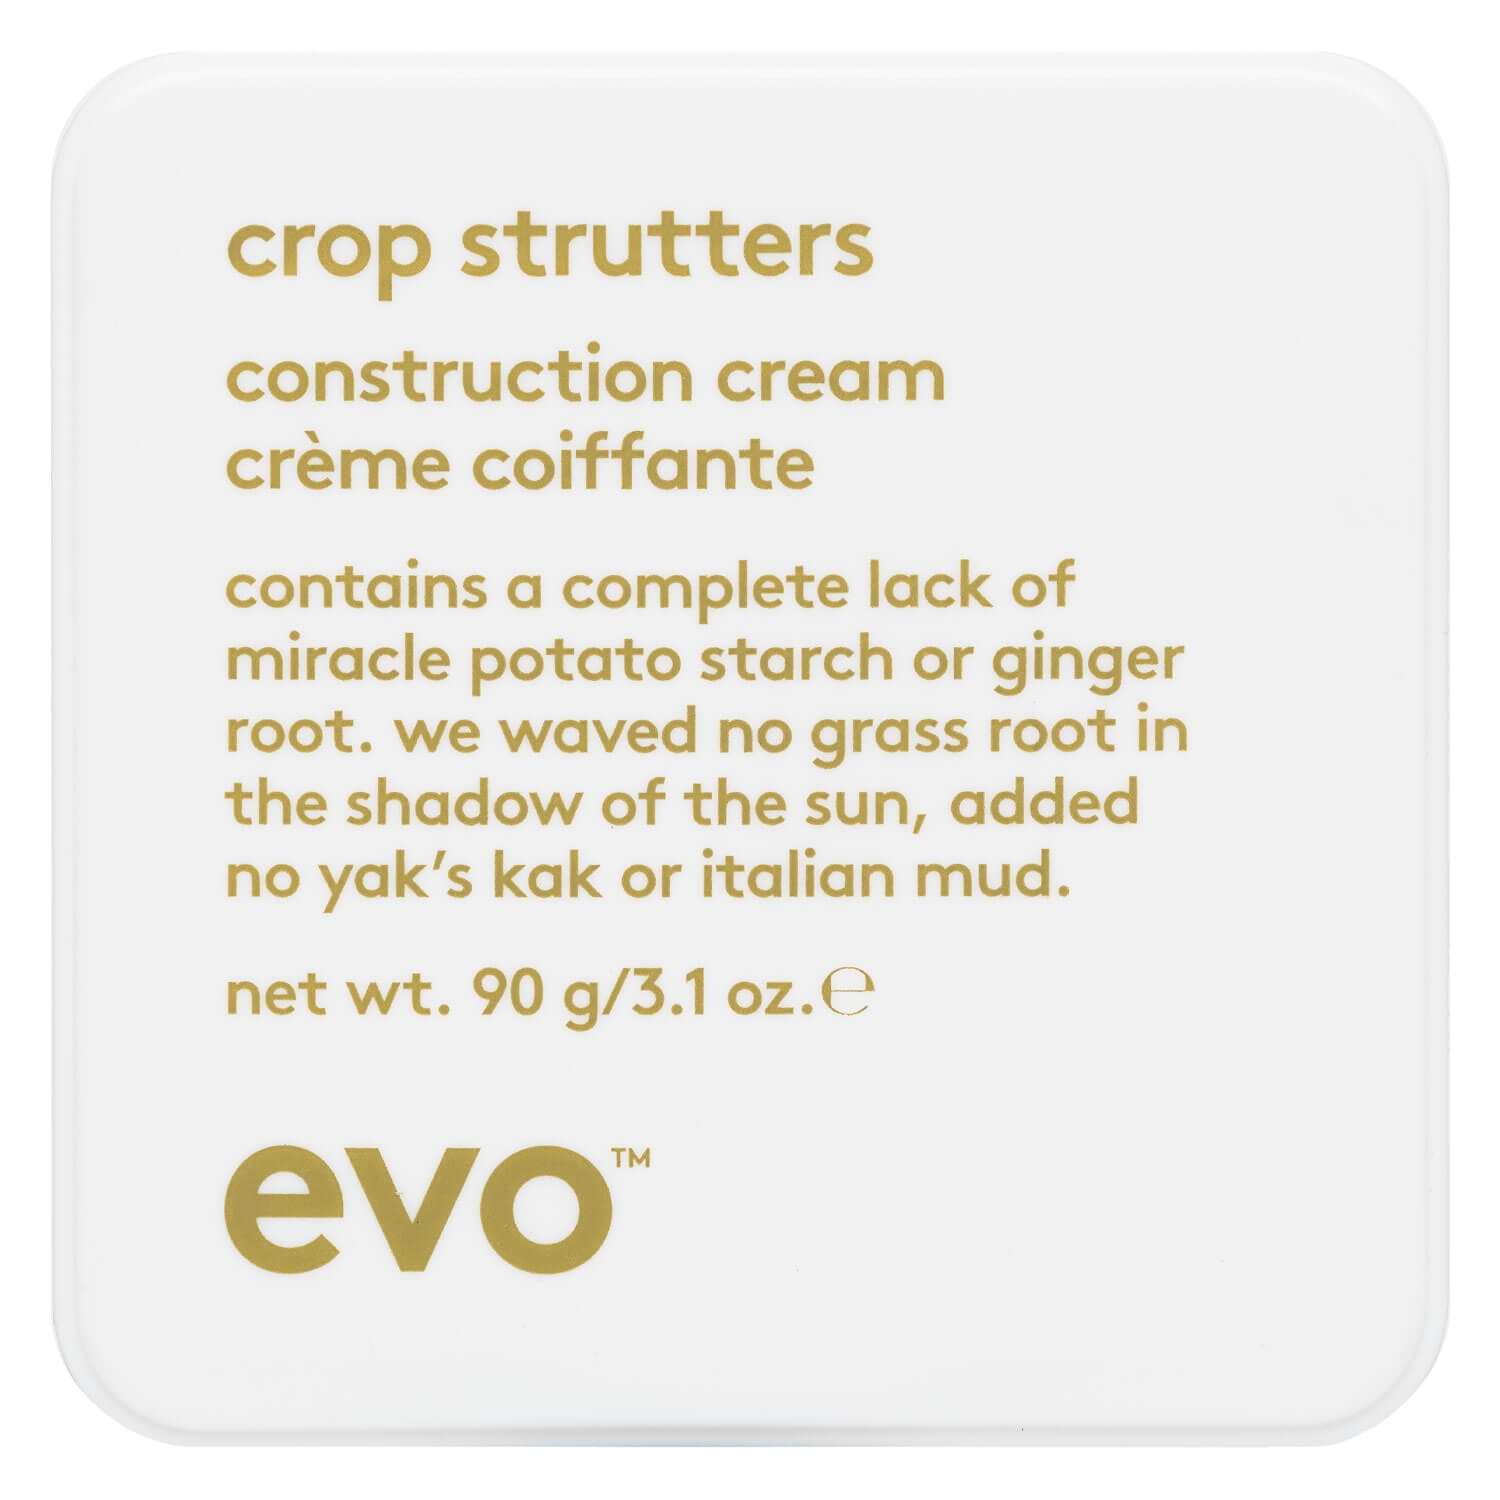 Produktbild von evo style - crop strutters construction cream